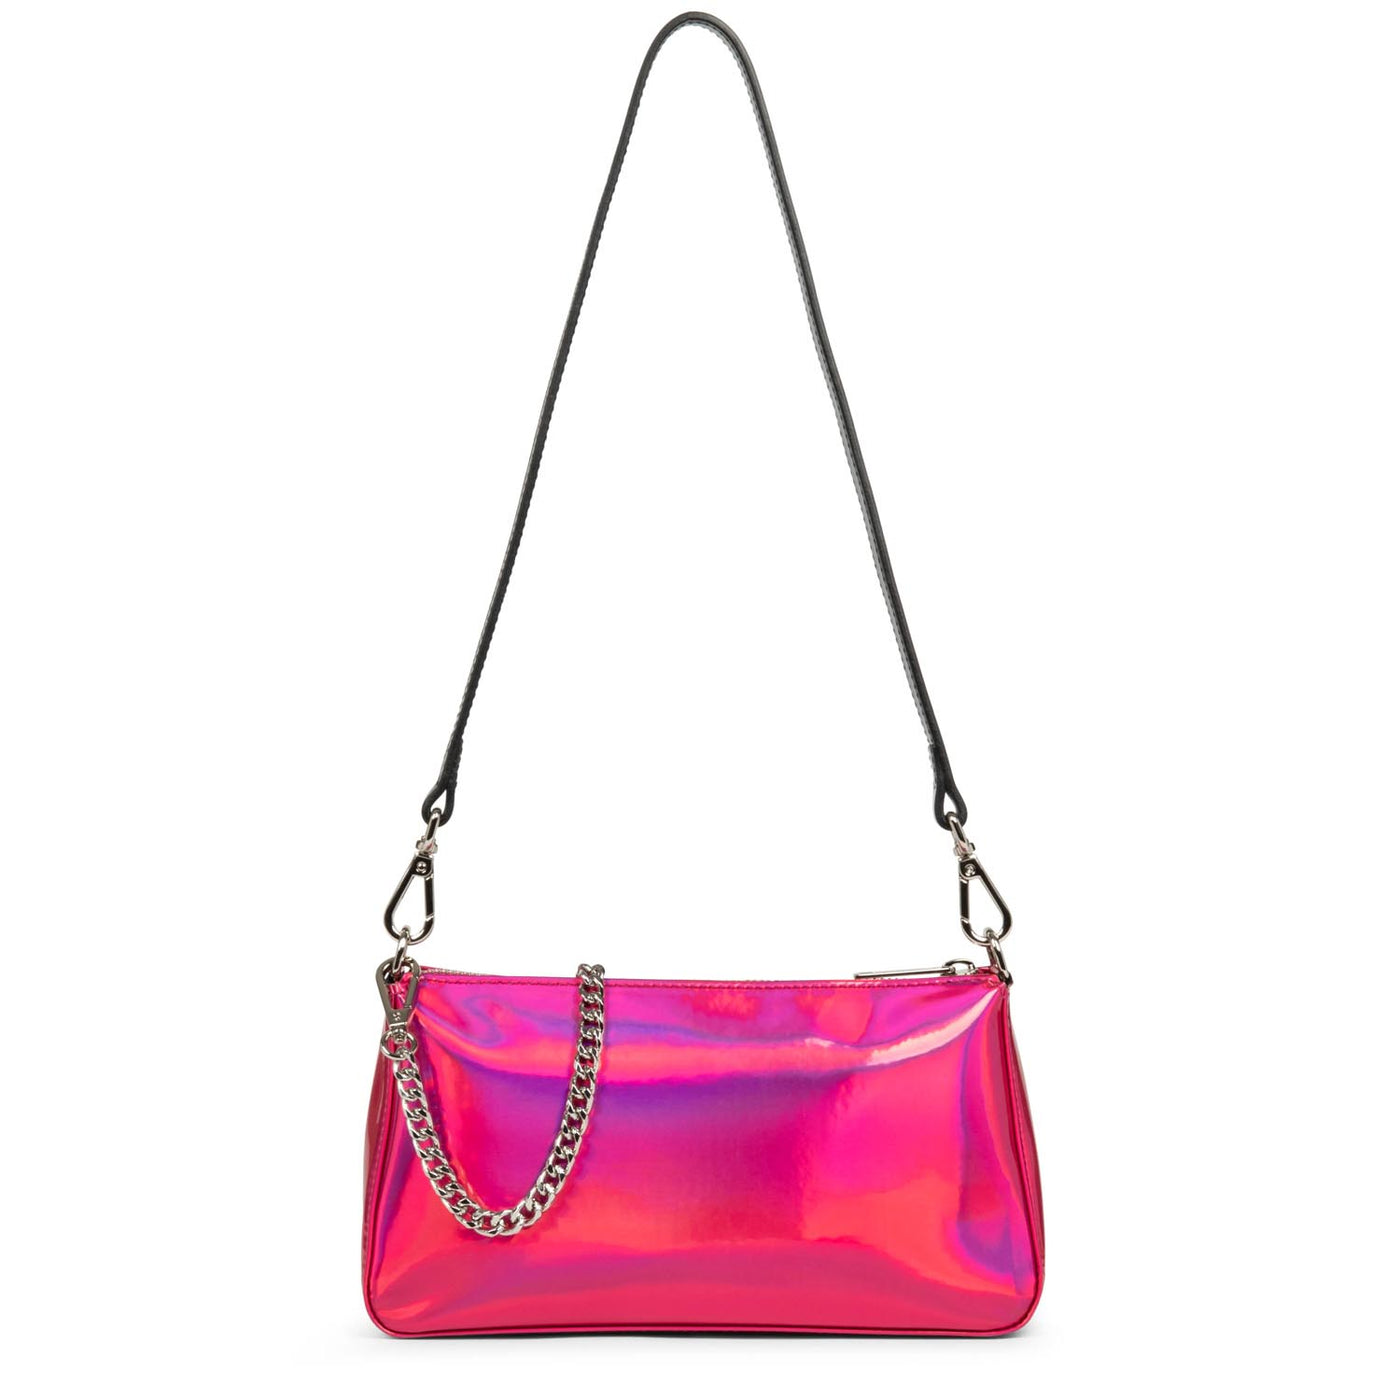 crossbody bag - glass irio #couleur_fuxia